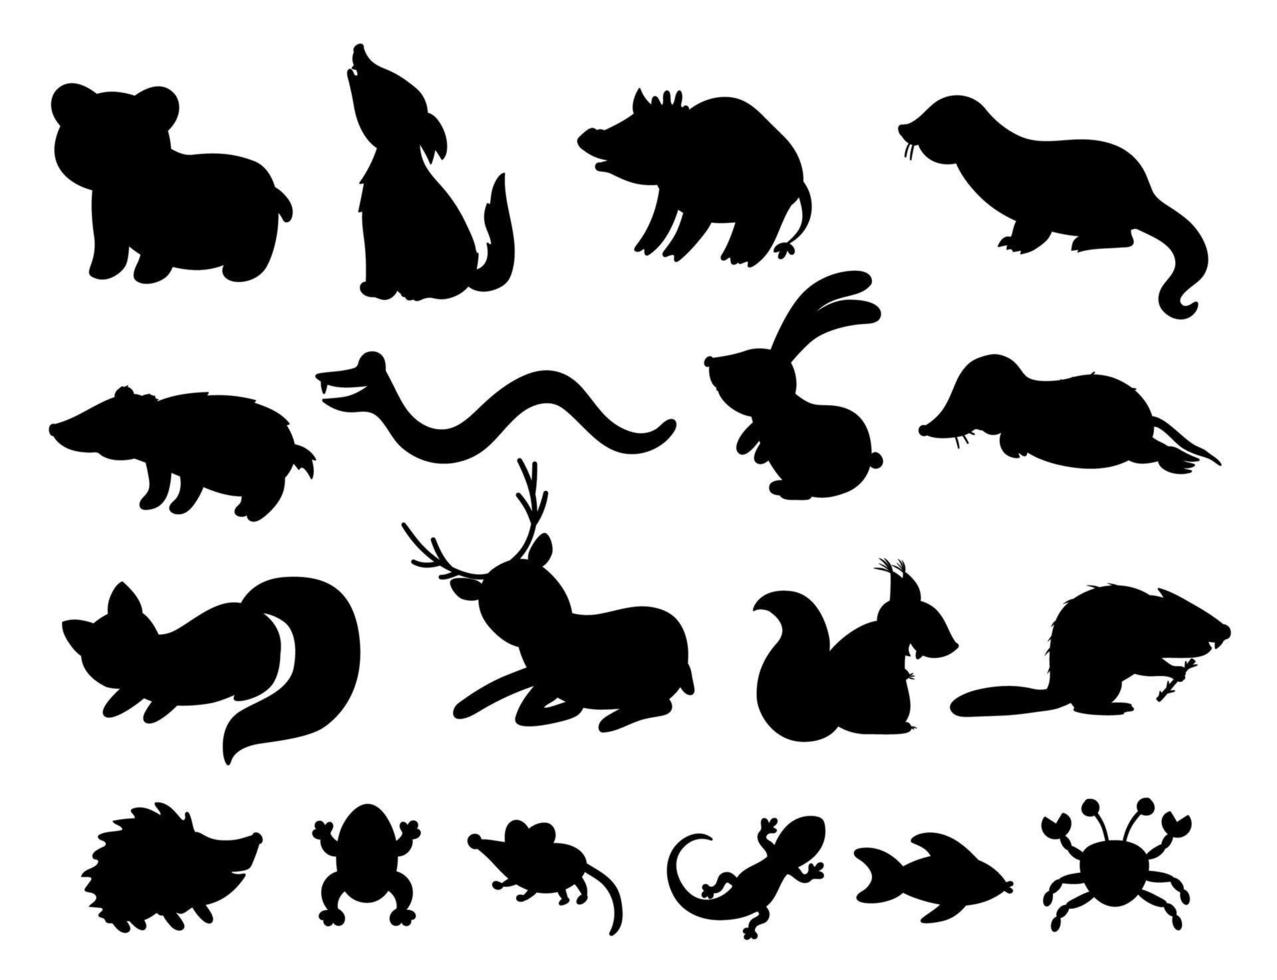 conjunto de siluetas de animales del bosque plano dibujado a mano de vector. divertida colección animal. linda ilustración de bosque en blanco y negro para diseño de niños, impresión, papelería vector